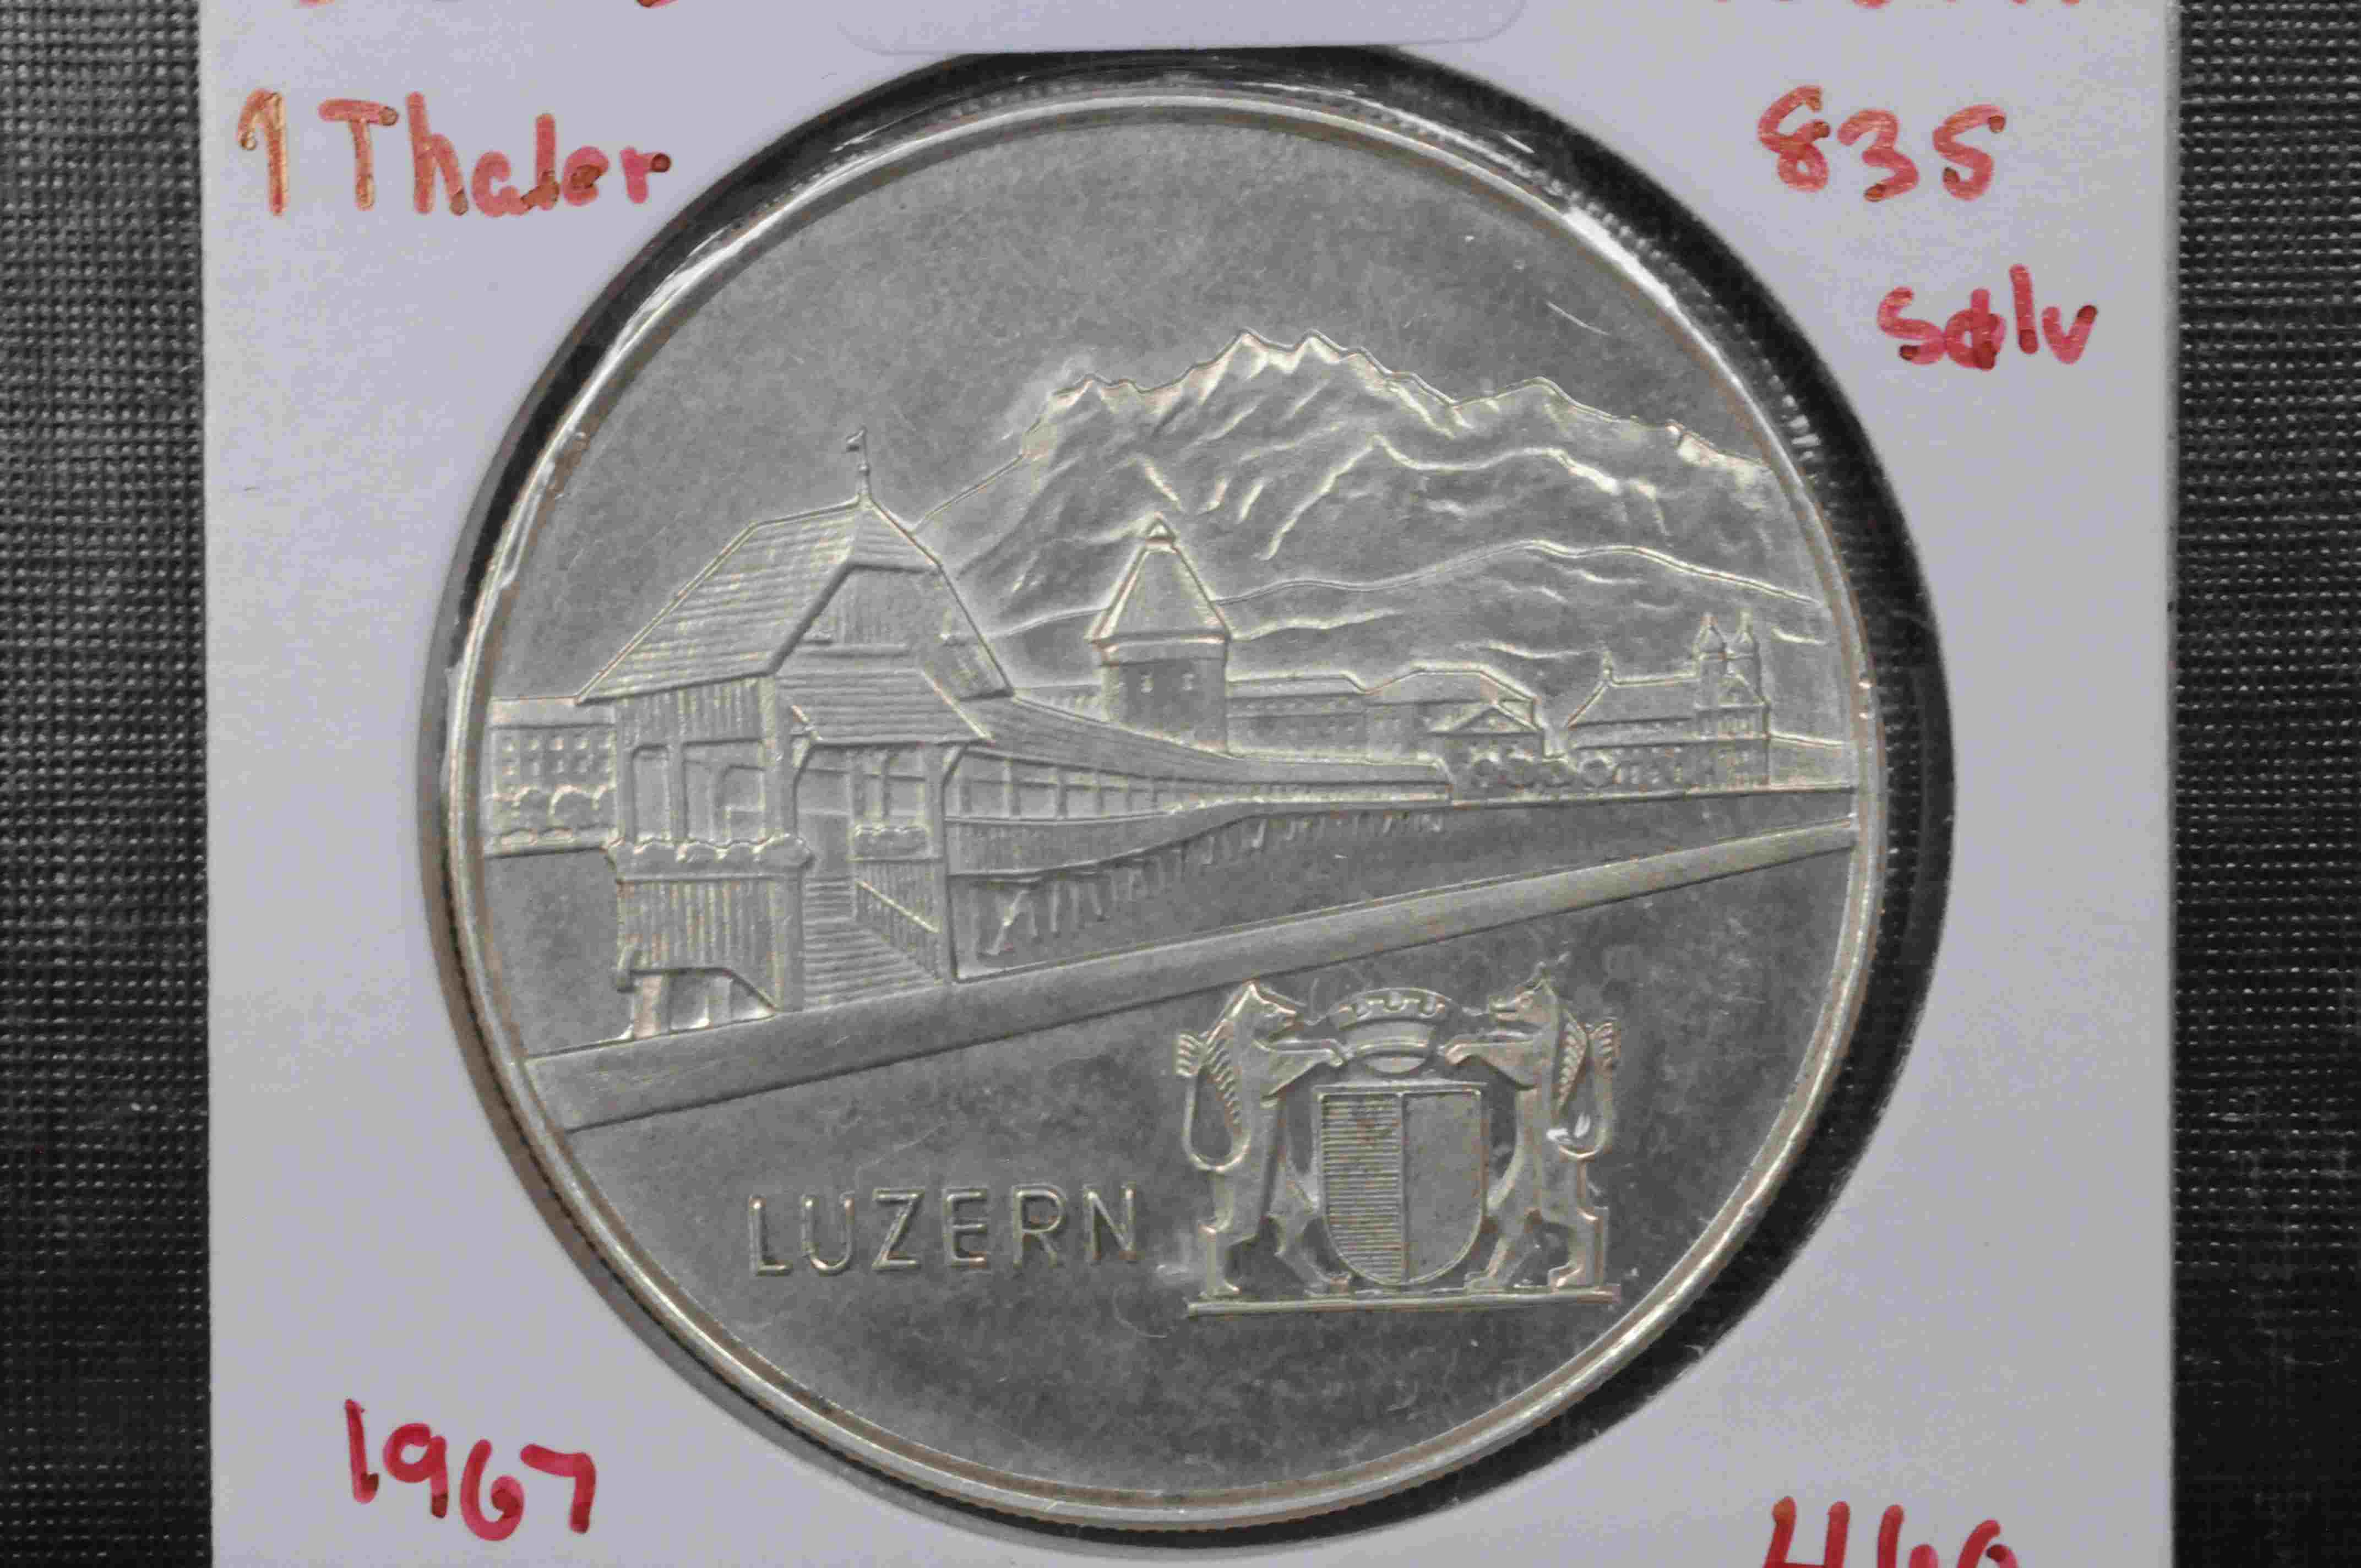 1 thaler Luzern 835 sølv 1967 kv 1/1+